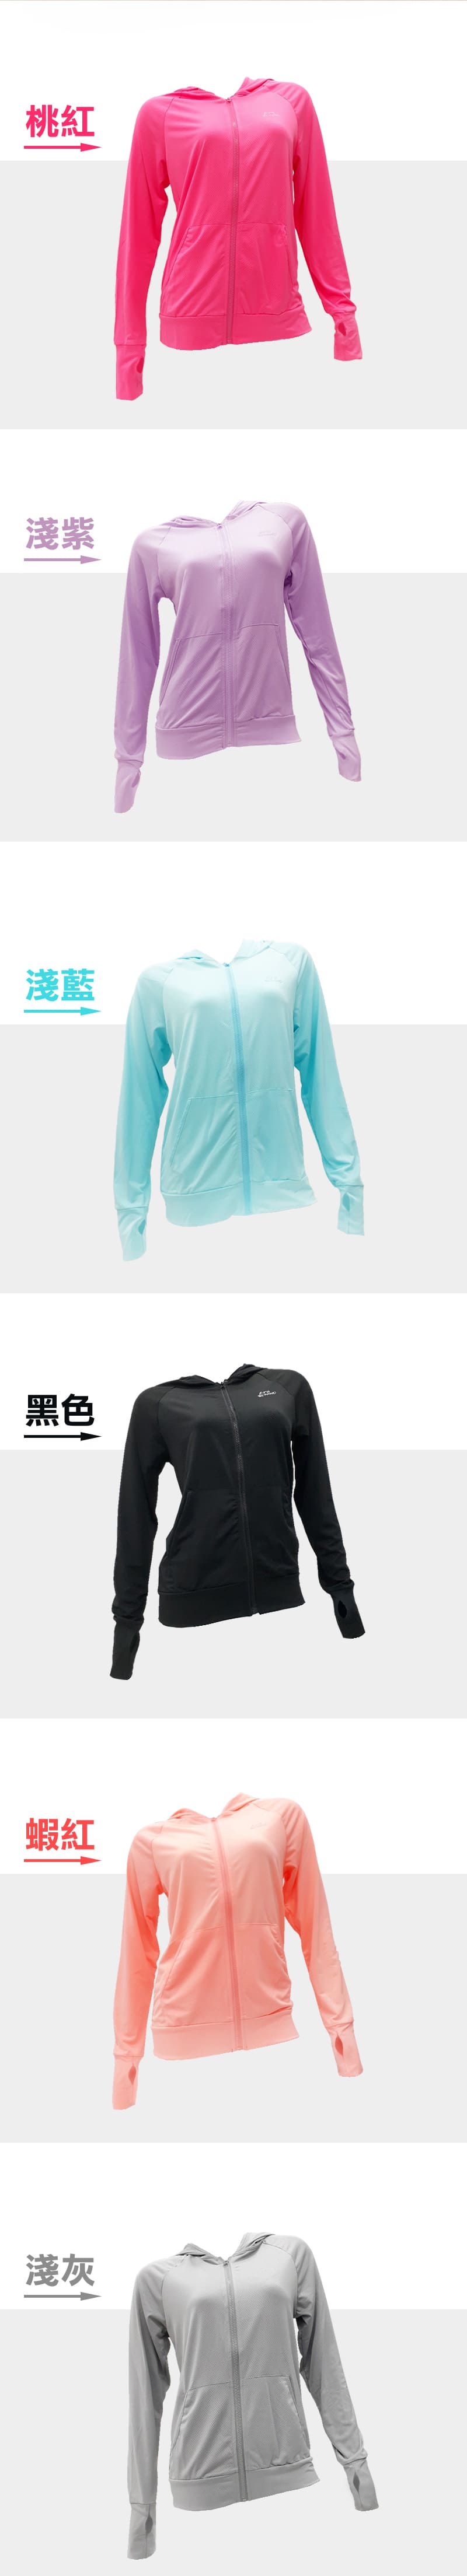 輕量抗UV防曬外套(M/L/XL/2XL) 女生外套/運動外套/薄外套/抗紫外線